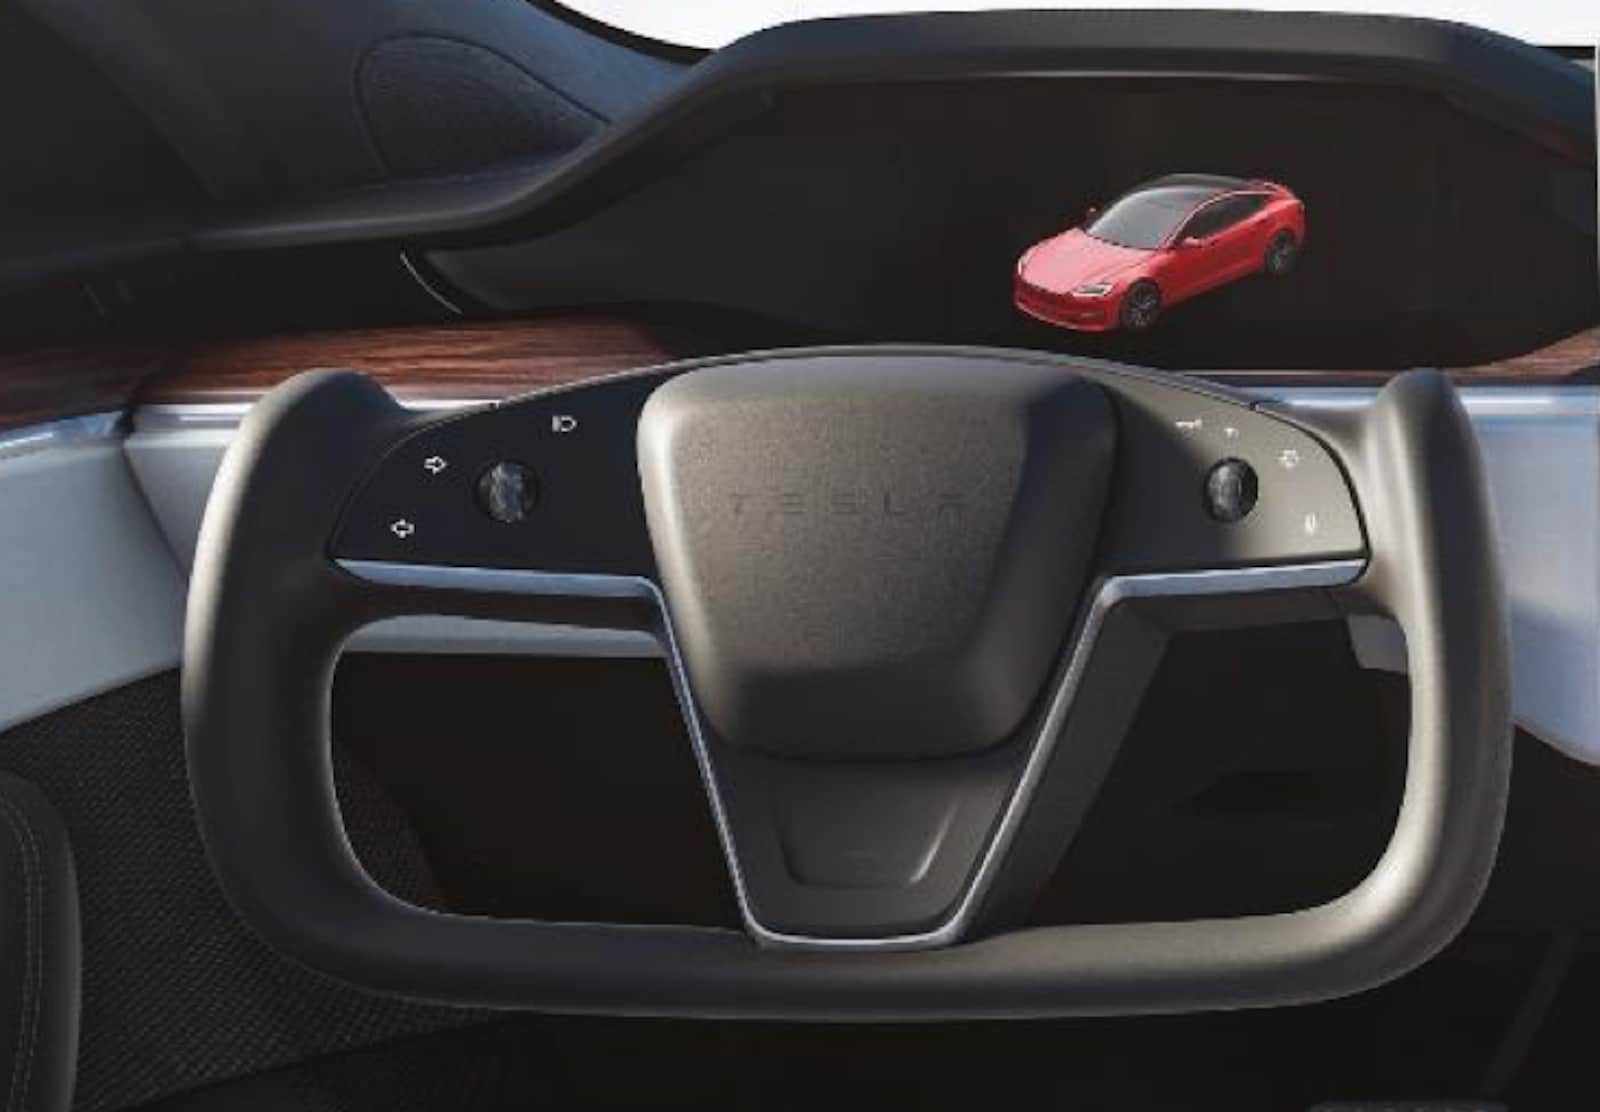 Tesla Rolls Out Next Gen Model S With Nod To The Past The Detroit Bureau